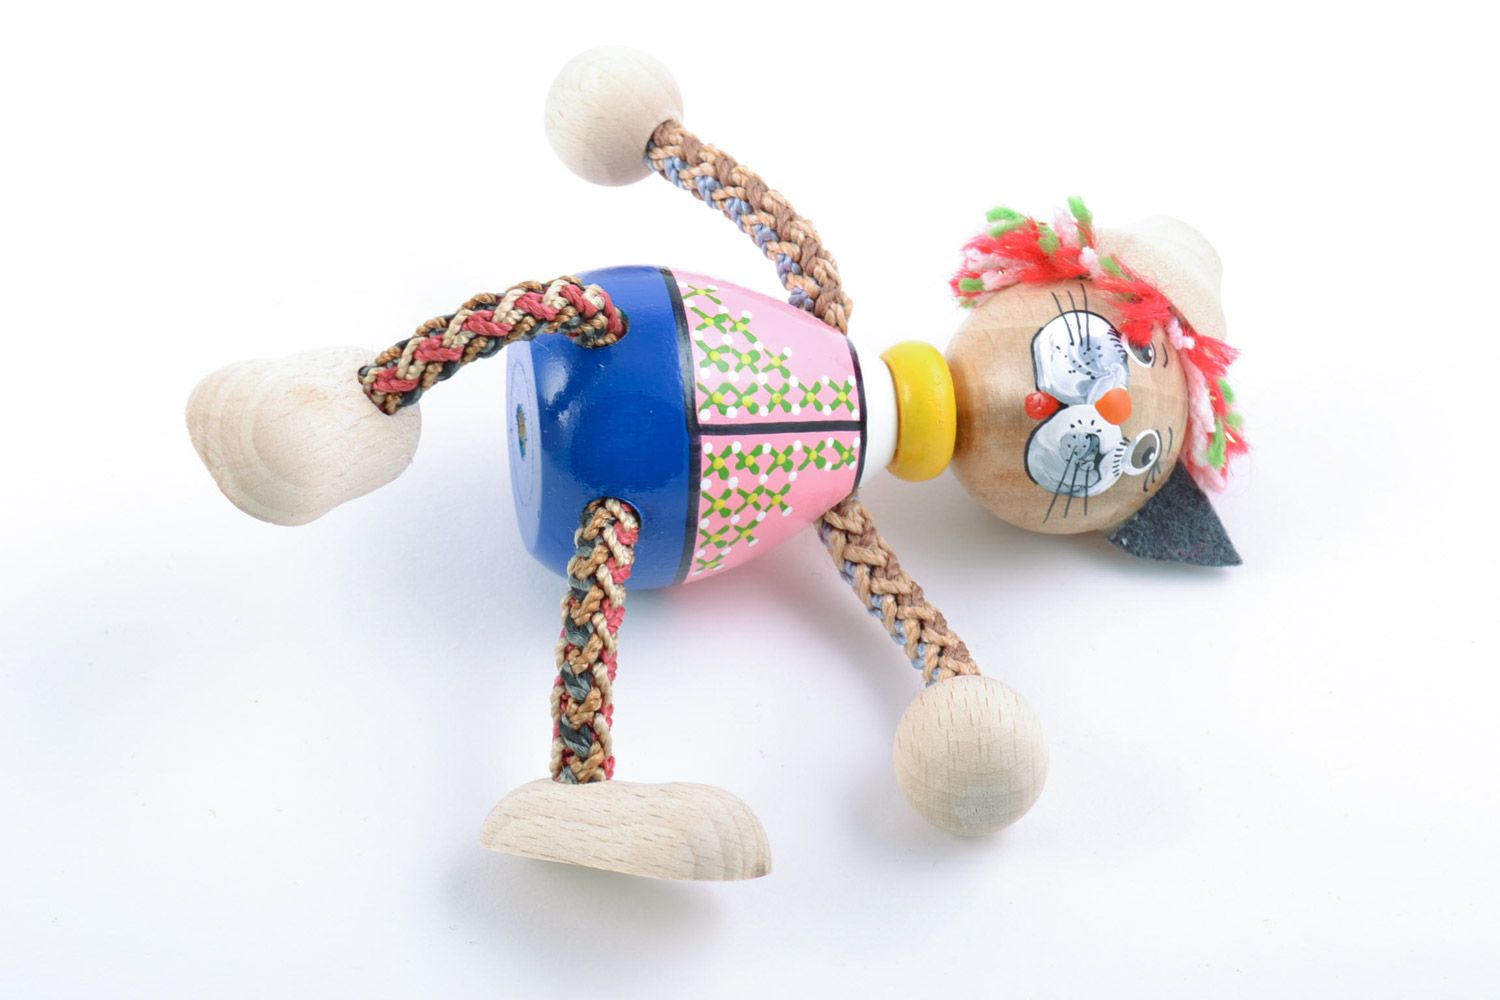 Holz Spielzeug Kater mit Farben bemalt grell Handarbeit Geschenk für Kinder  foto 5